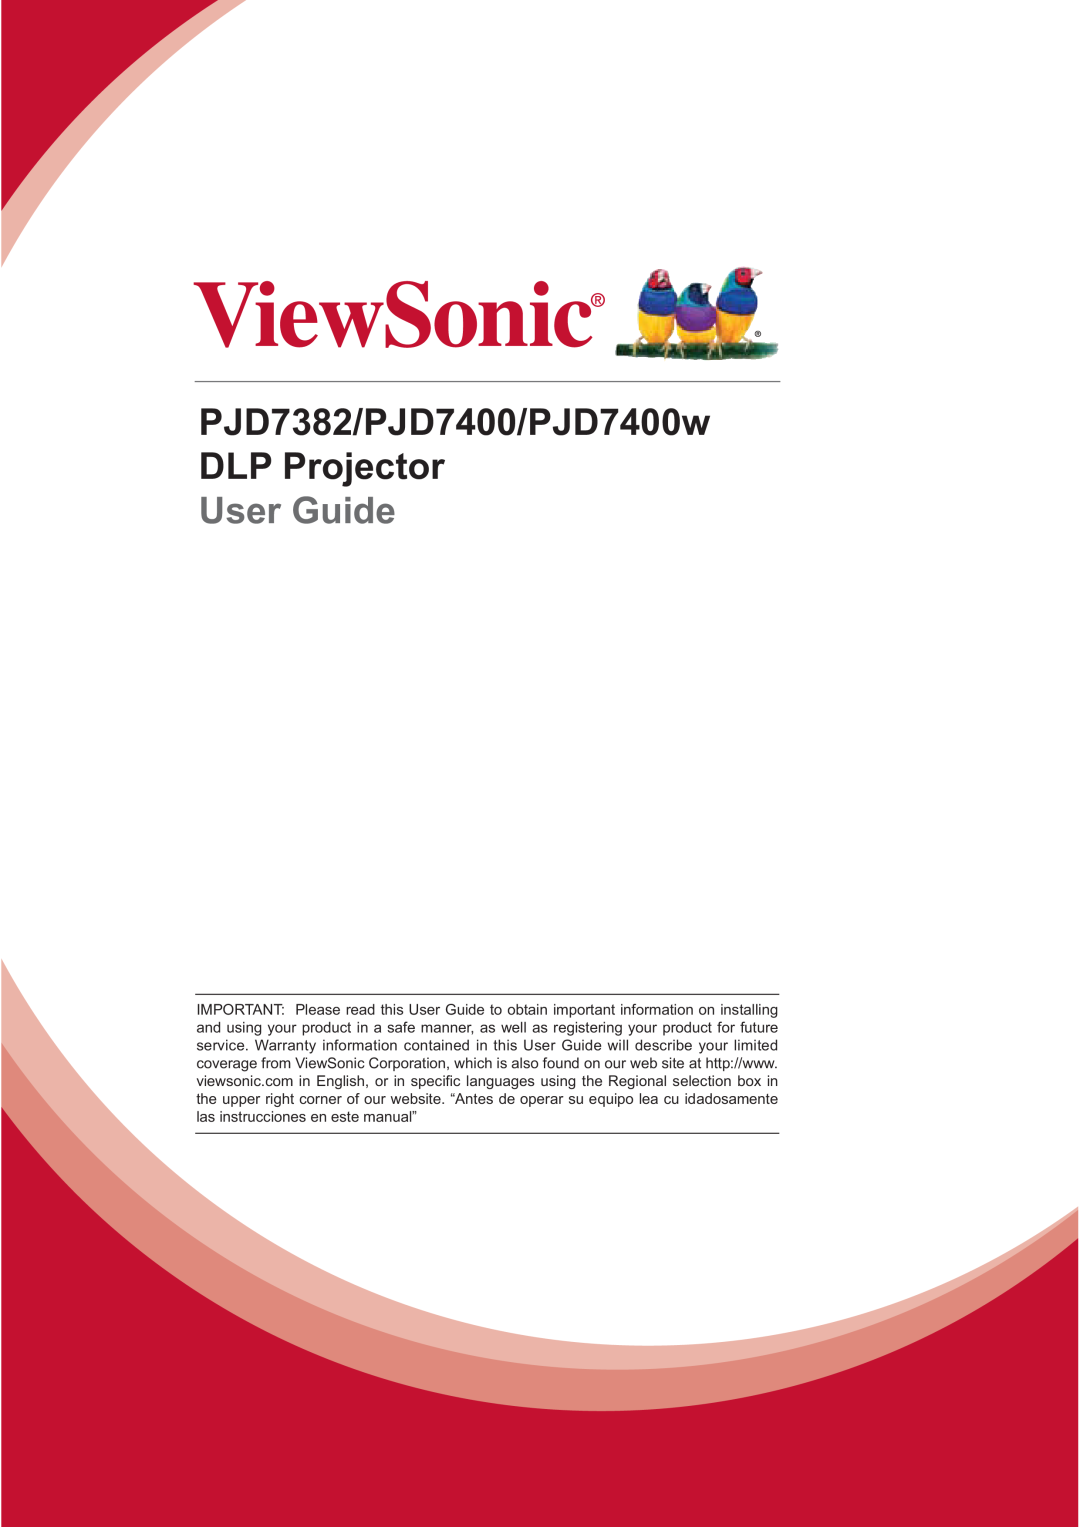 ViewSonic PJD7400W warranty PJD7382/PJD7400/PJD7400w DLP Projector, User Guide 